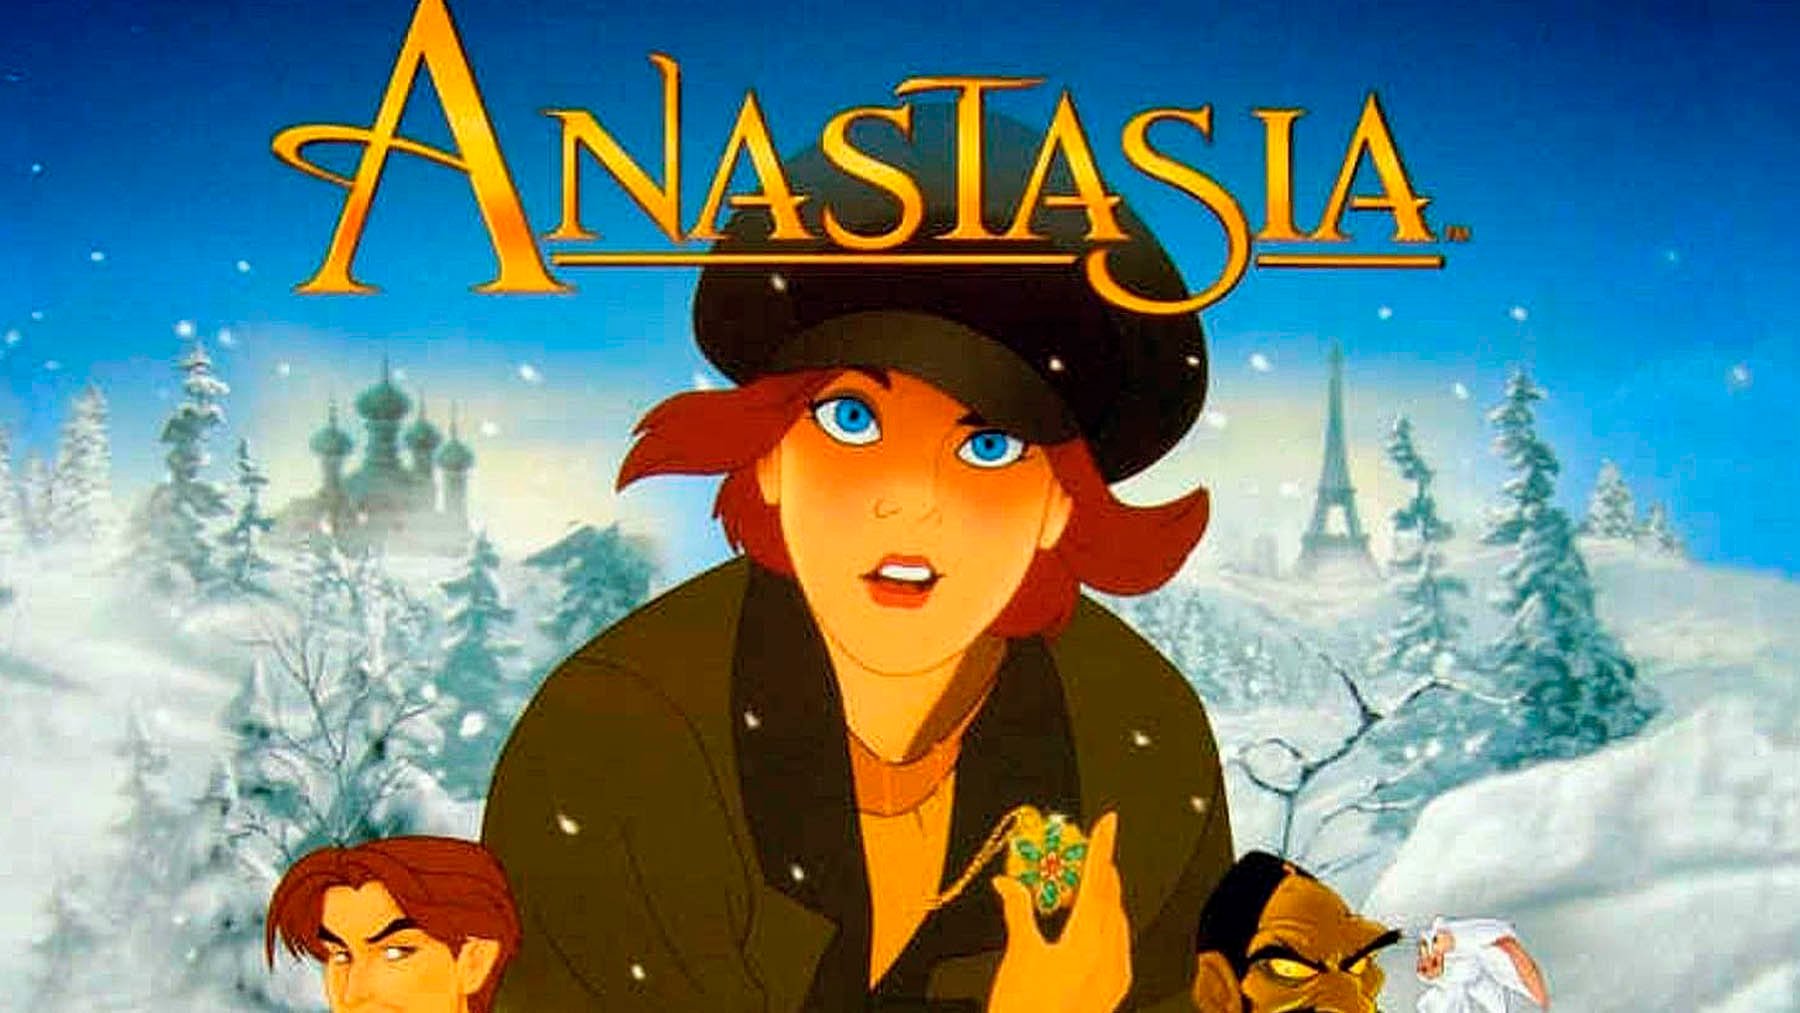 Disney + ha quitado de su catálogo americano ‘Anastasia’ ¿Tiene algo que ver con la guerra en Ucrania?